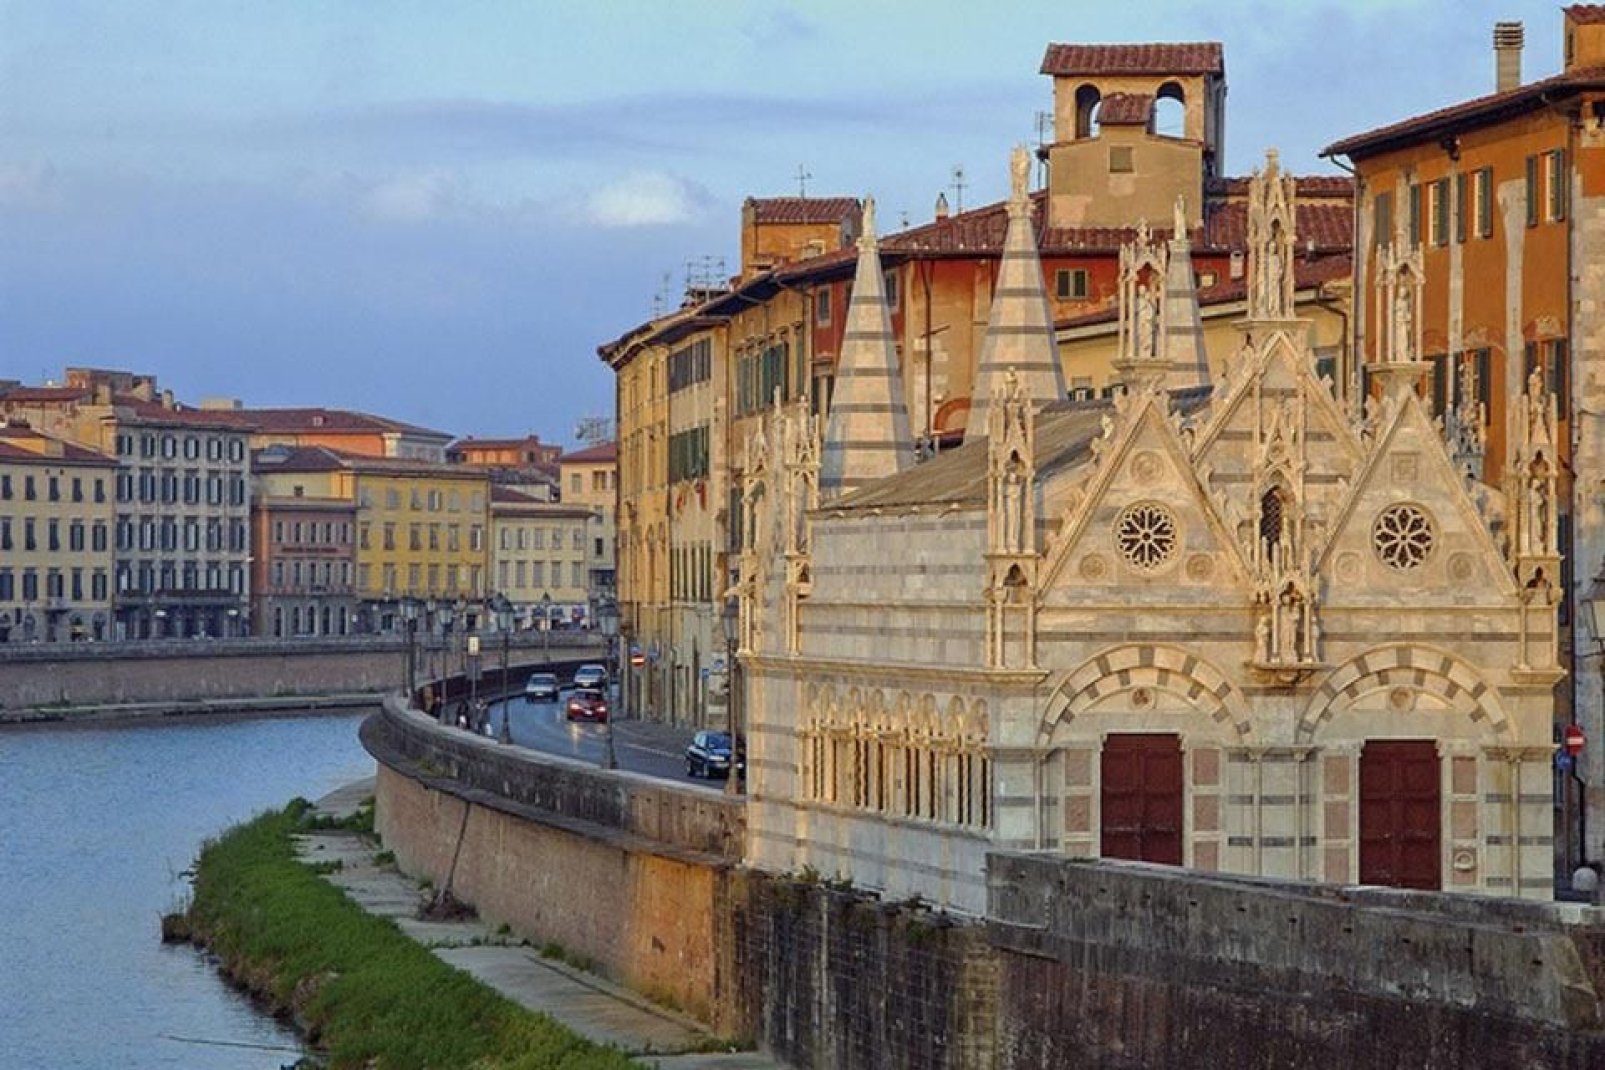 La iglesia de Santa Maria della Spina es una pequeña iglesia gótica situada a orillas del Arno en Pisa.